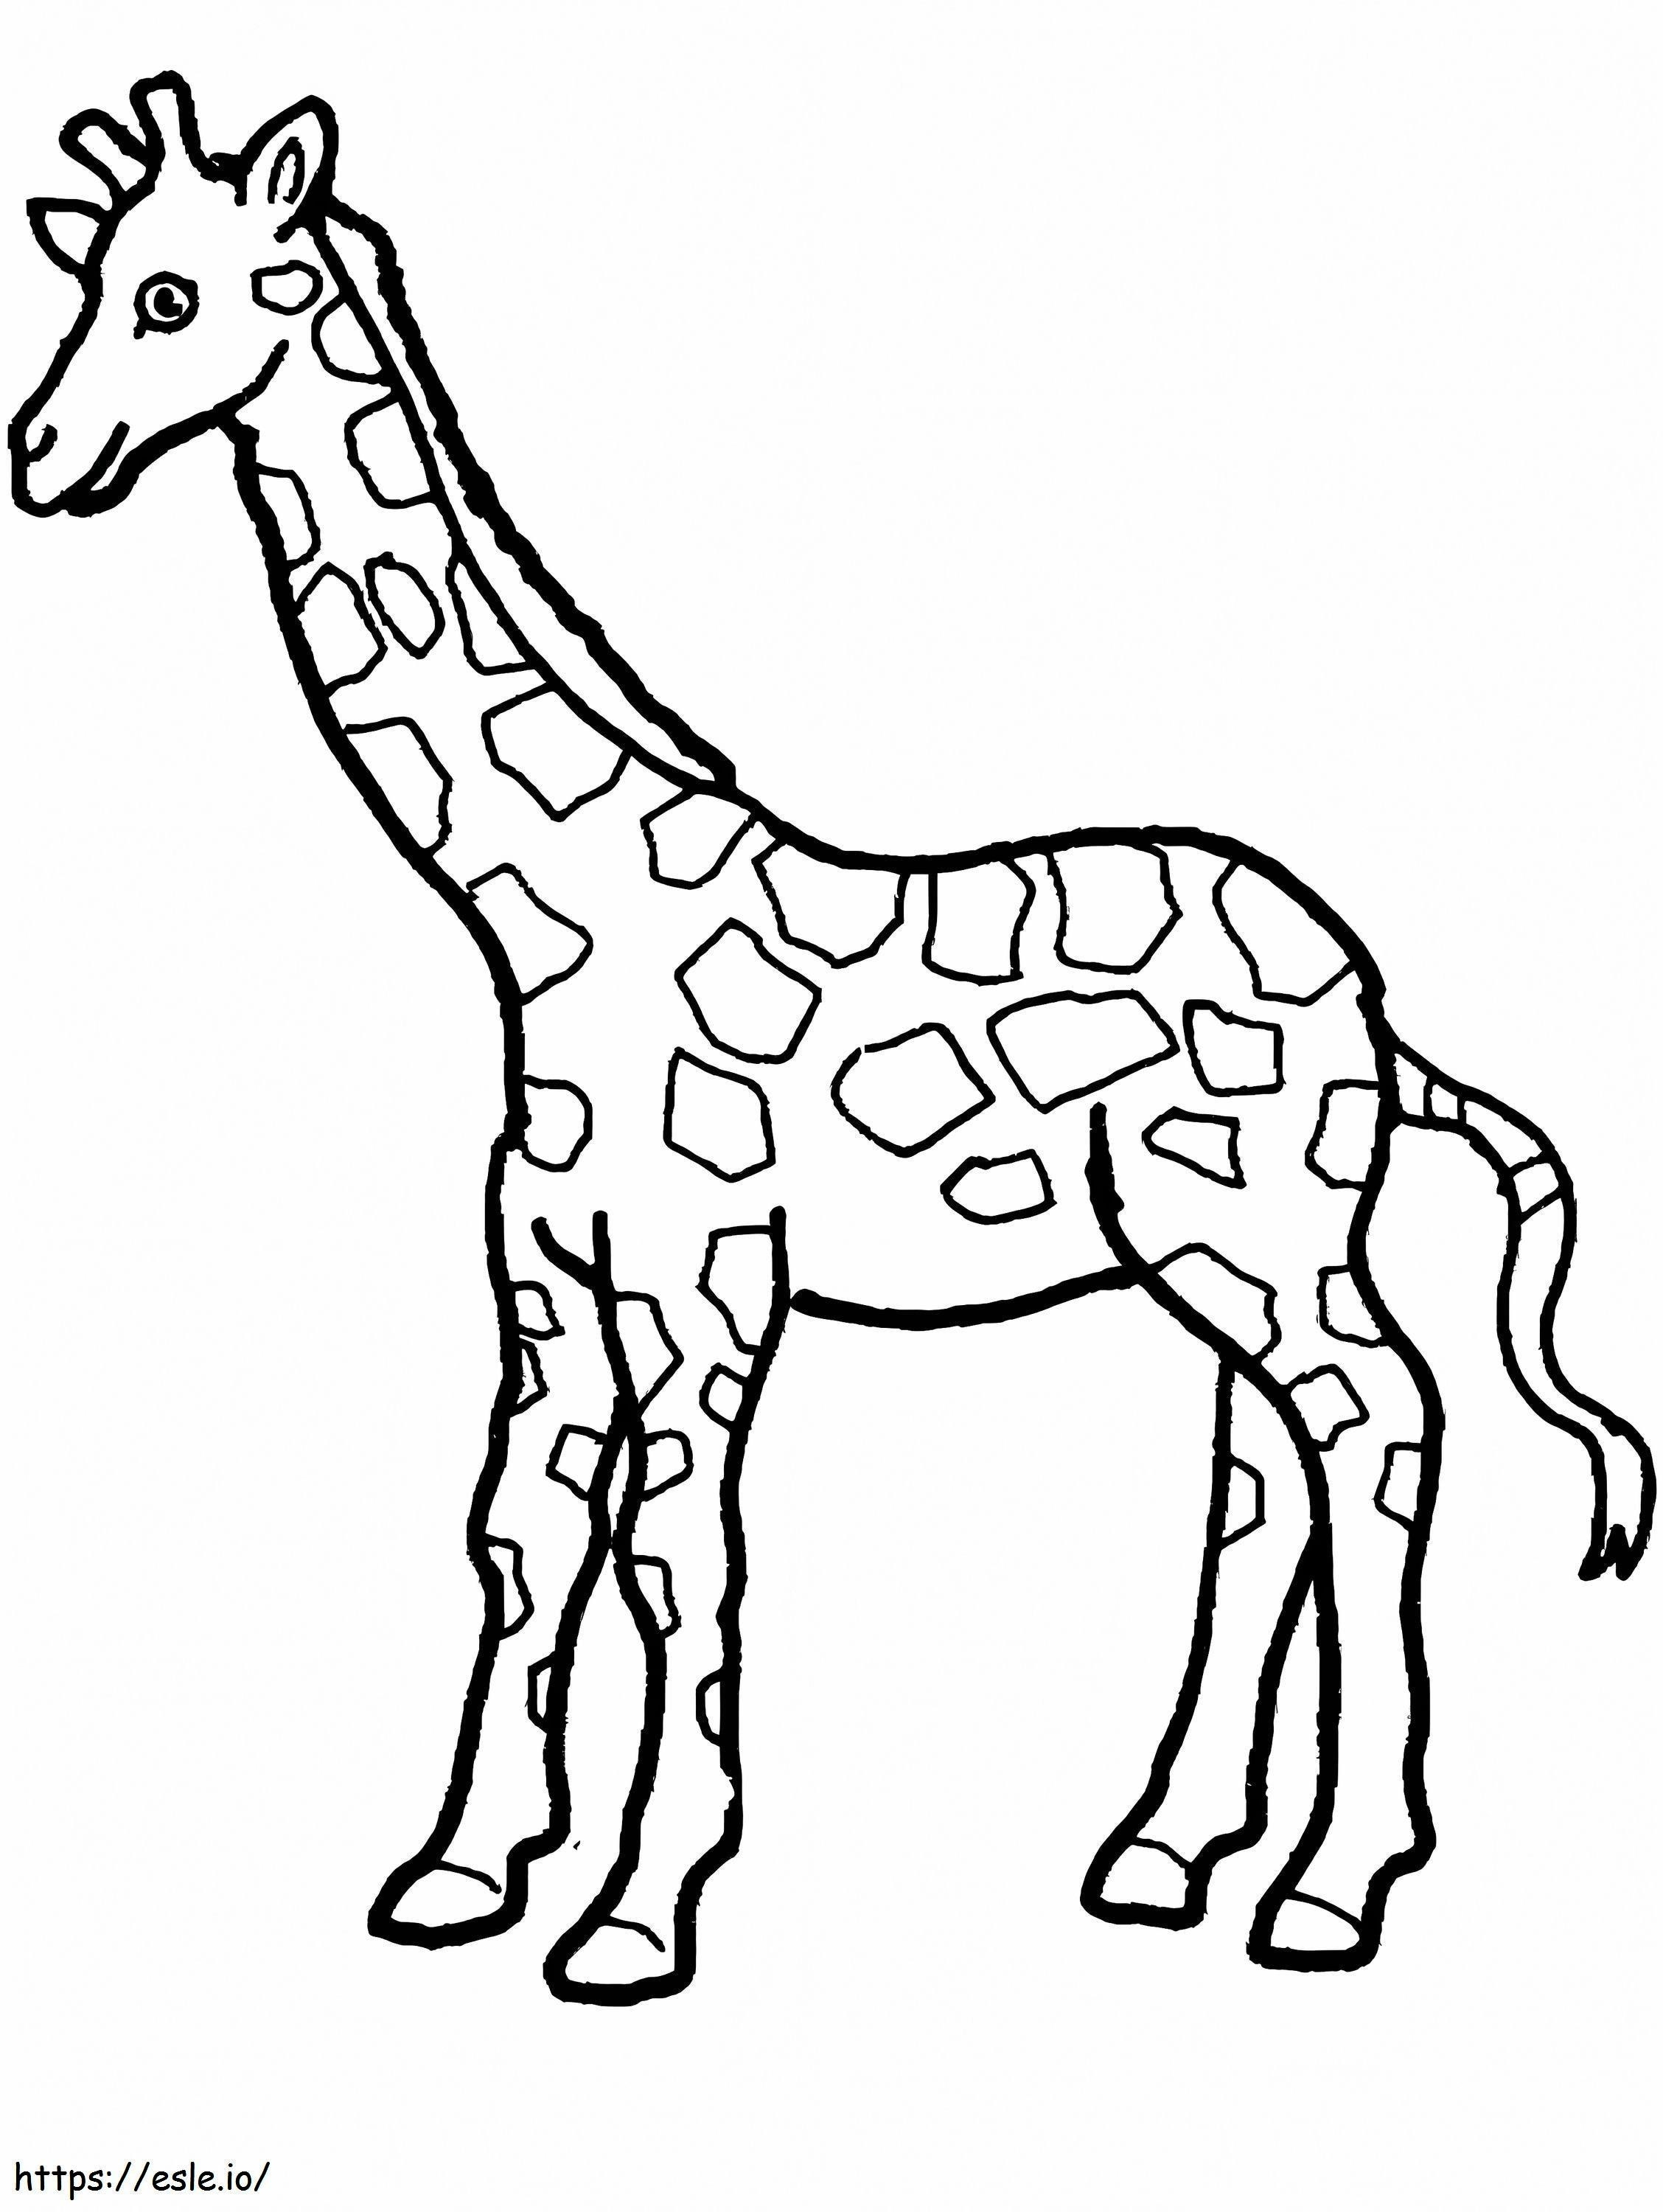 Eine Giraffe ausmalbilder